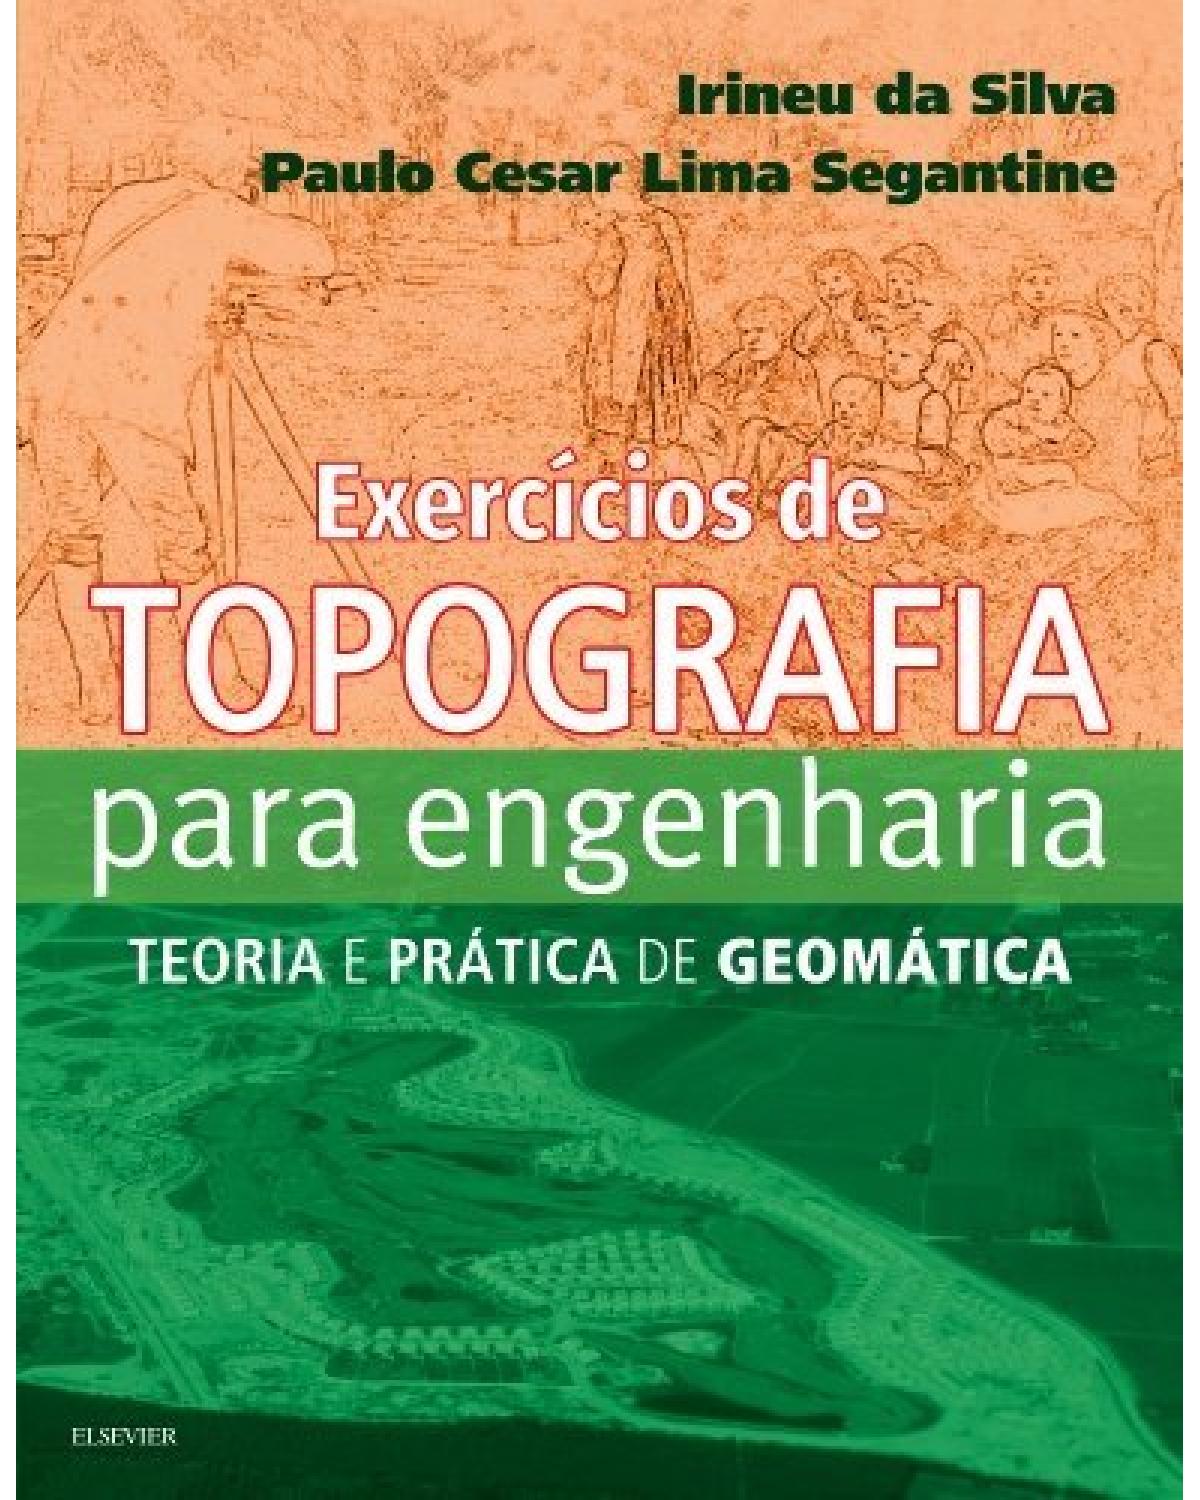 Exercícios de topografia para engenharia - teoria e prática de geomática - 1ª Edição | 2018